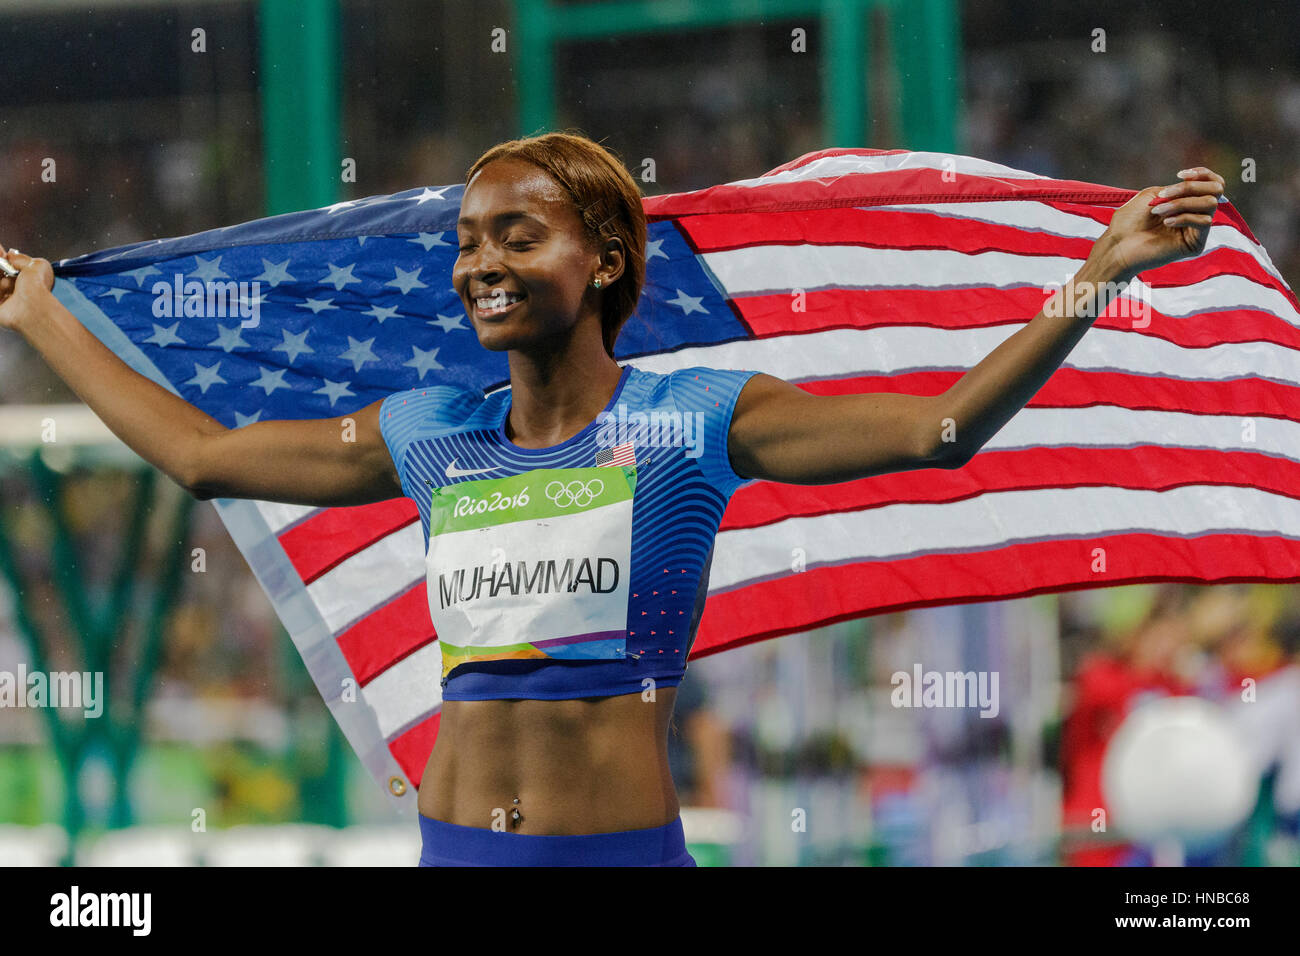 Rio de Janeiro, Brésil. 18 août 2016. L'athlétisme, Dalilah Muhammad (USA) remporte la médaille d'or dans le 400m haies finale au Jeux Olympiques 2016 Banque D'Images